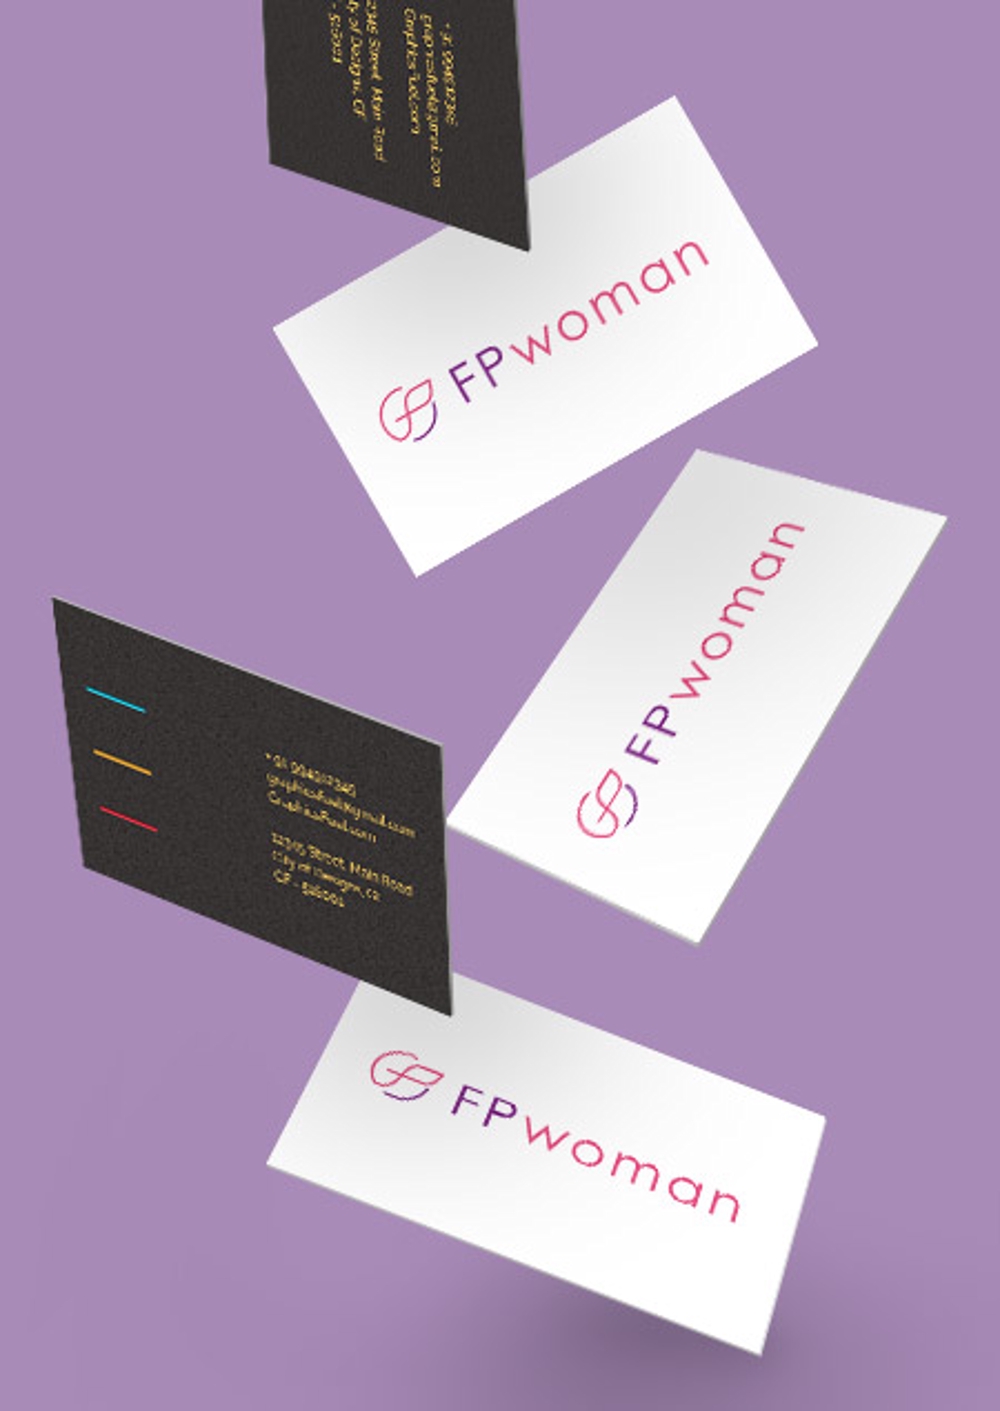 女性のためのファイナンシャルプランニング会社のロゴ製作